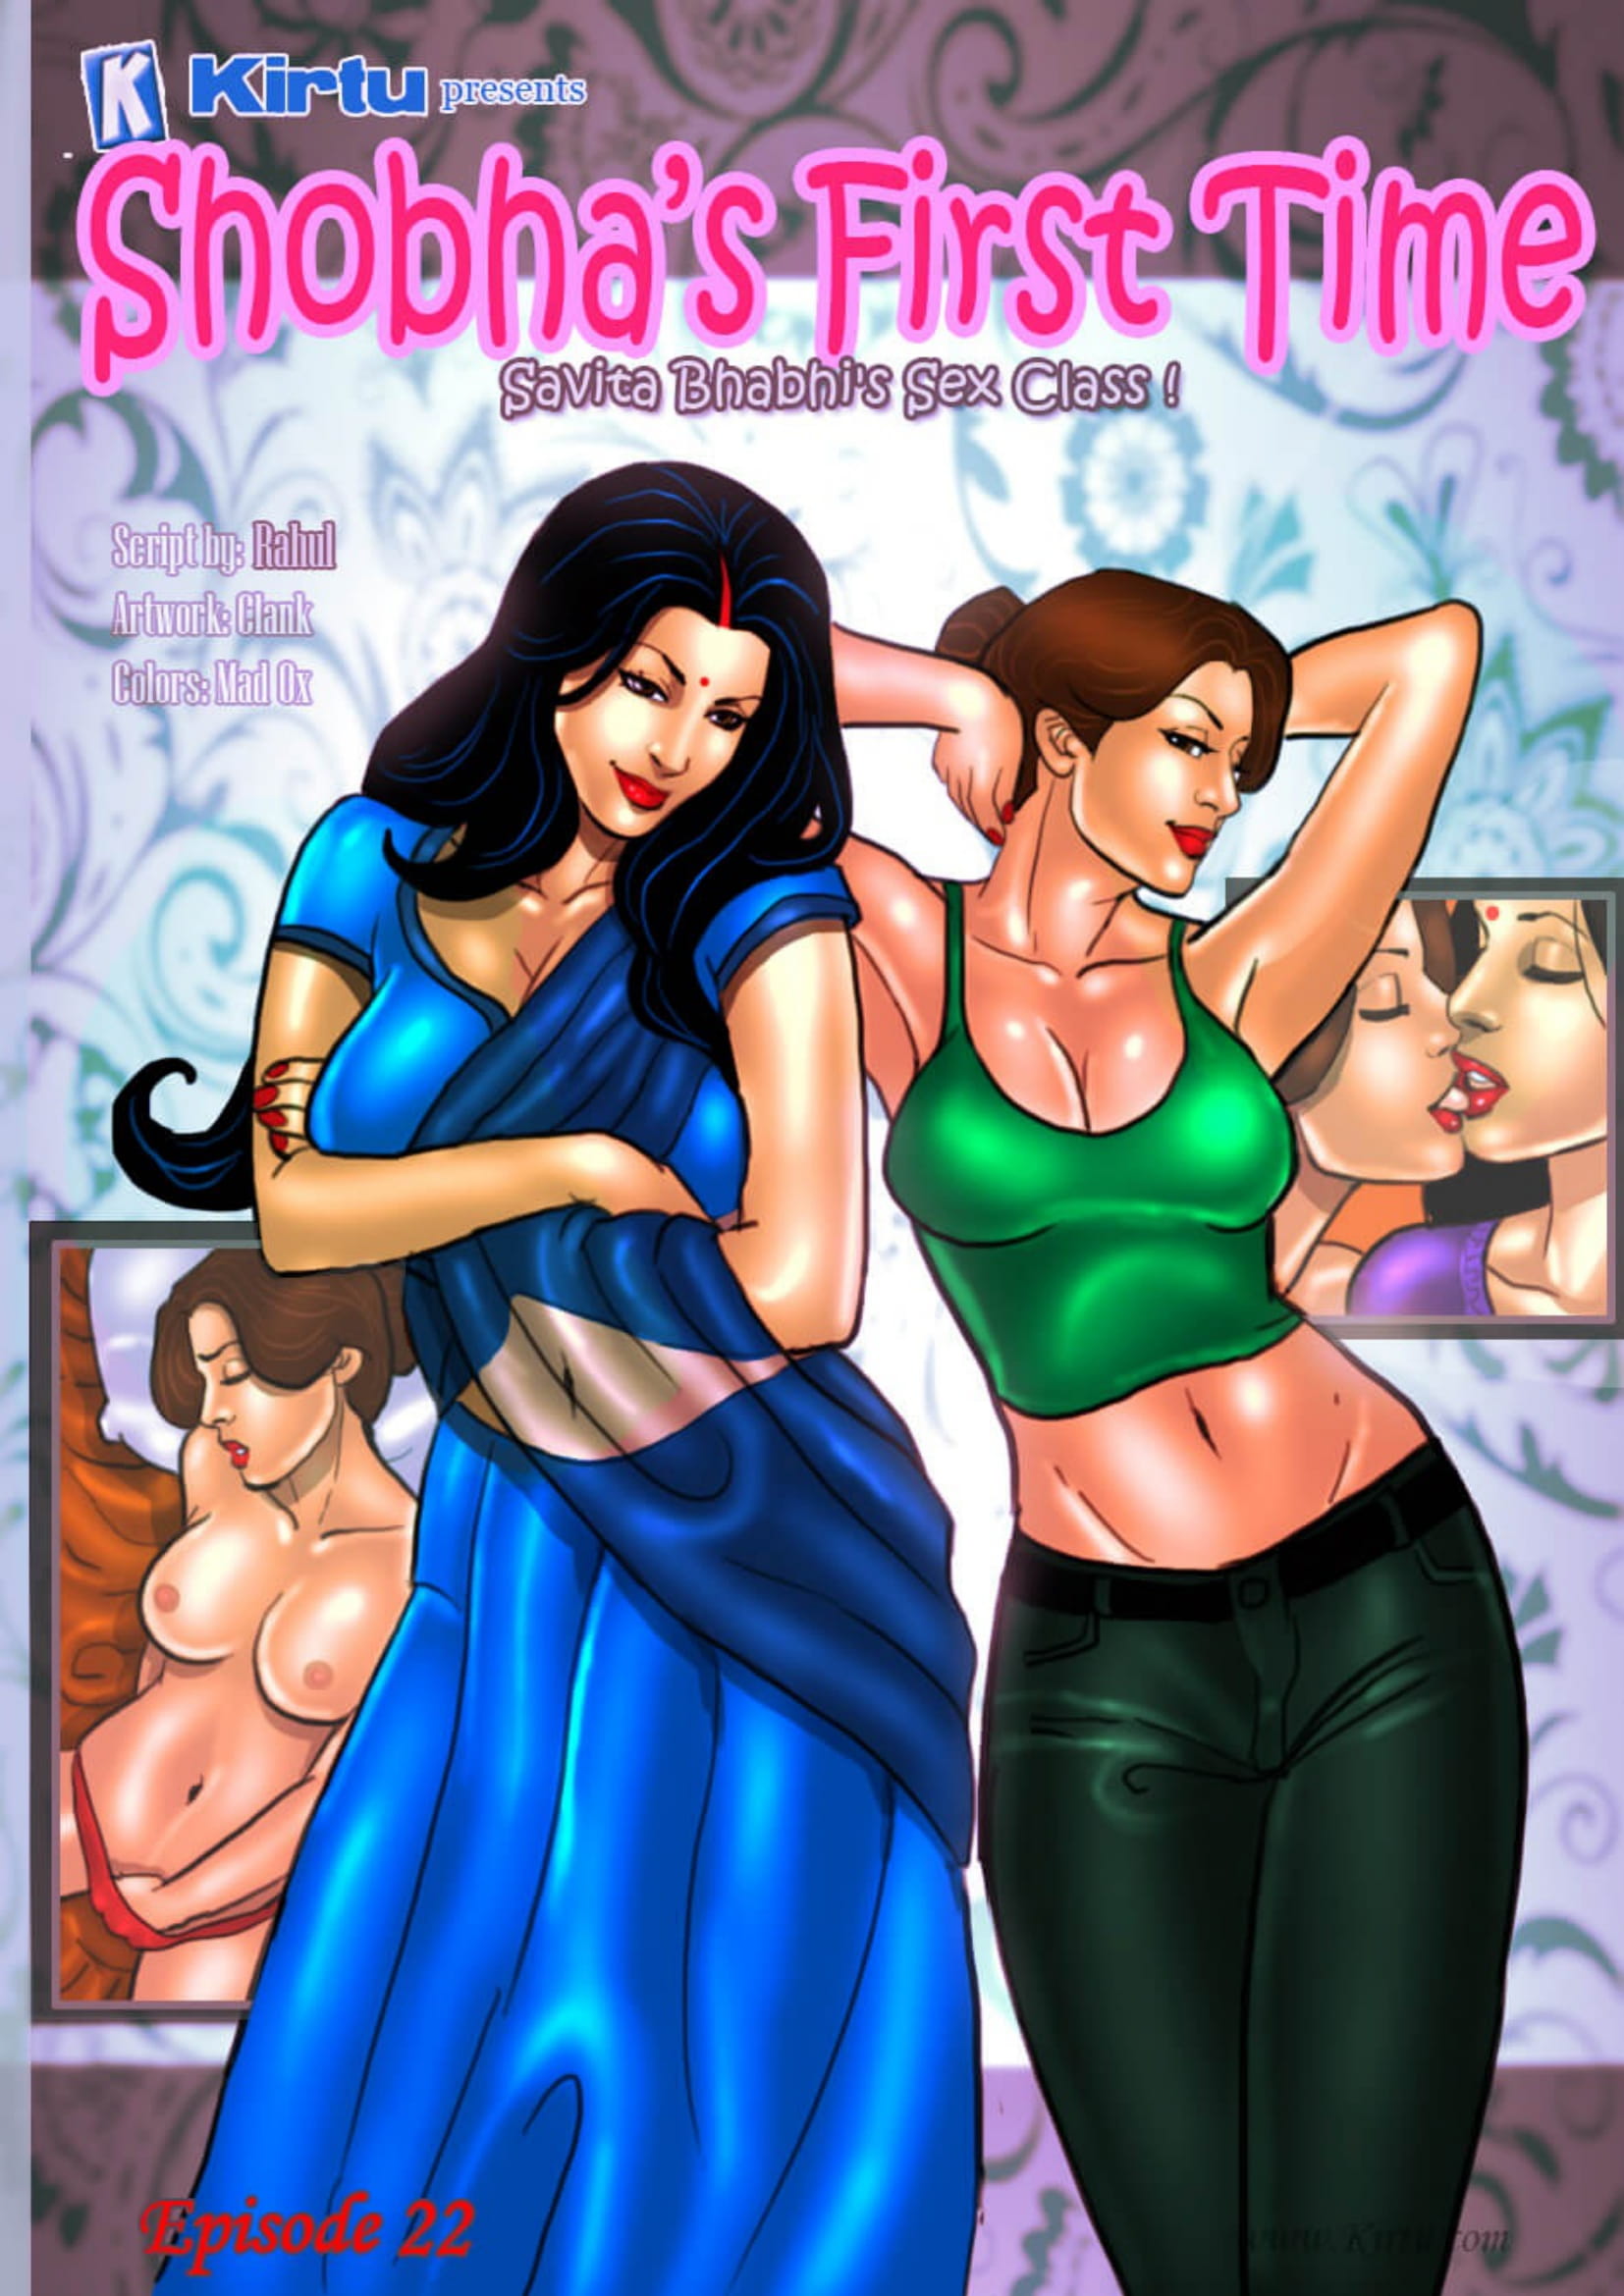 Best of Savita bhabhi hot comic